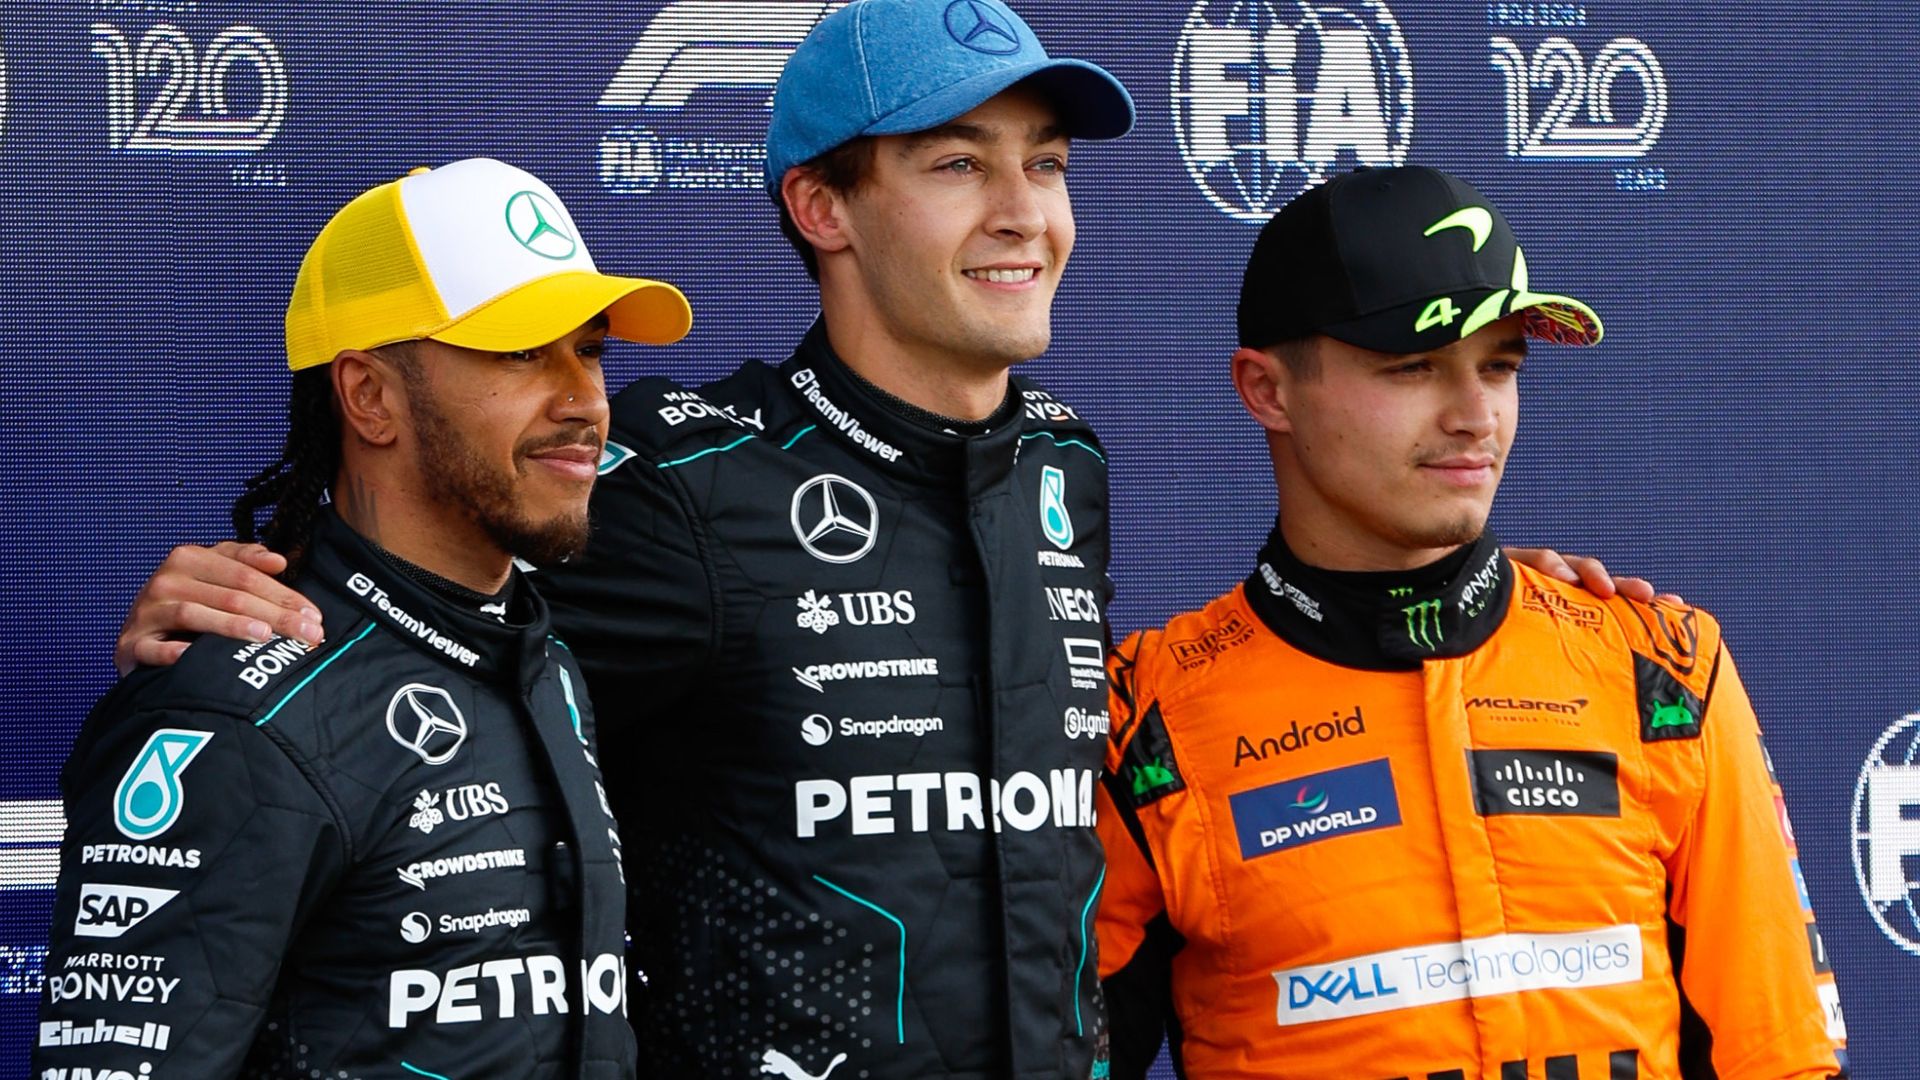 British trio poised for Silverstone showdown as Verstappen lurks